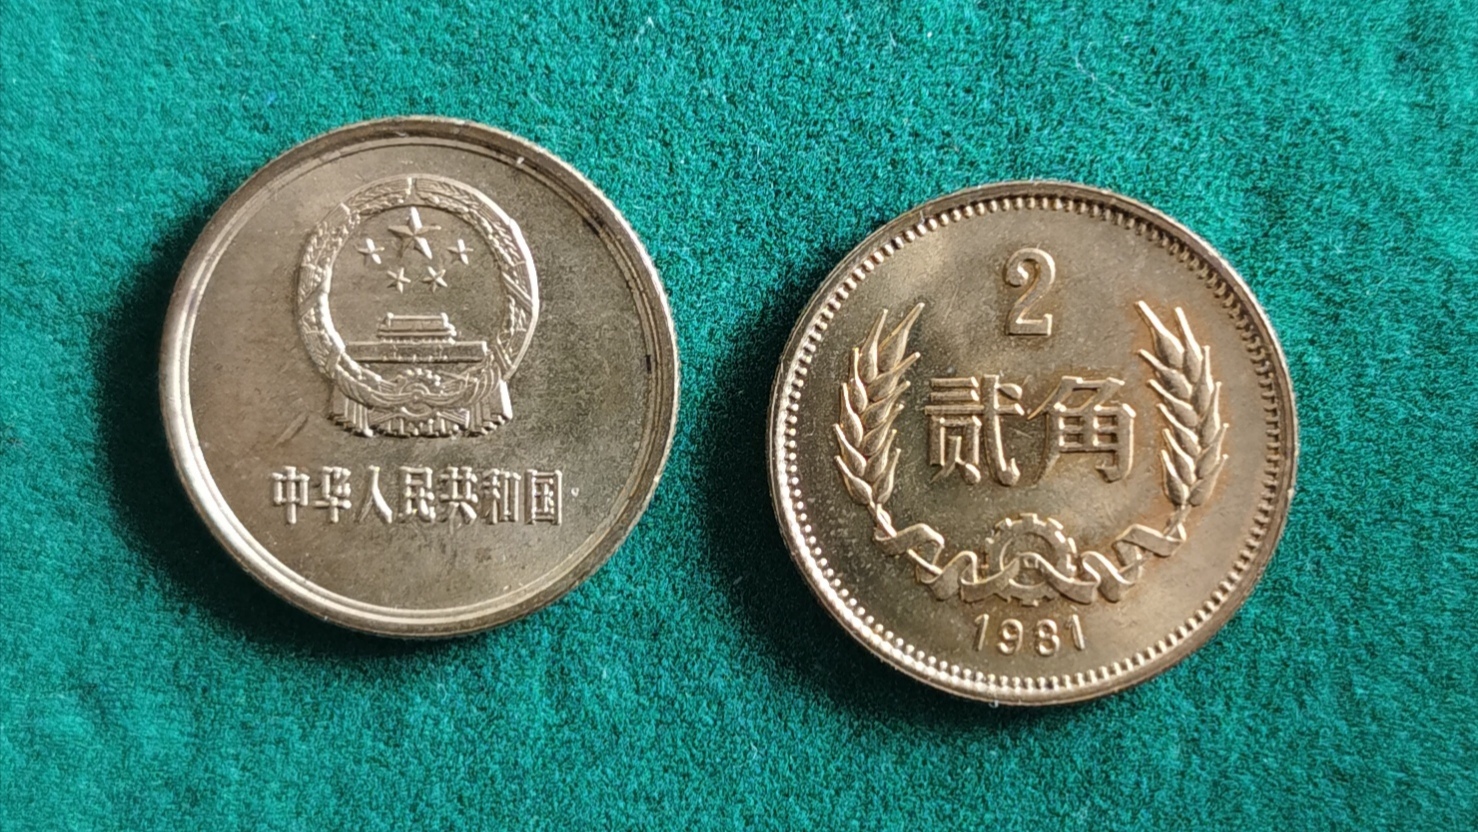 1981年面值2角铜币求鉴定